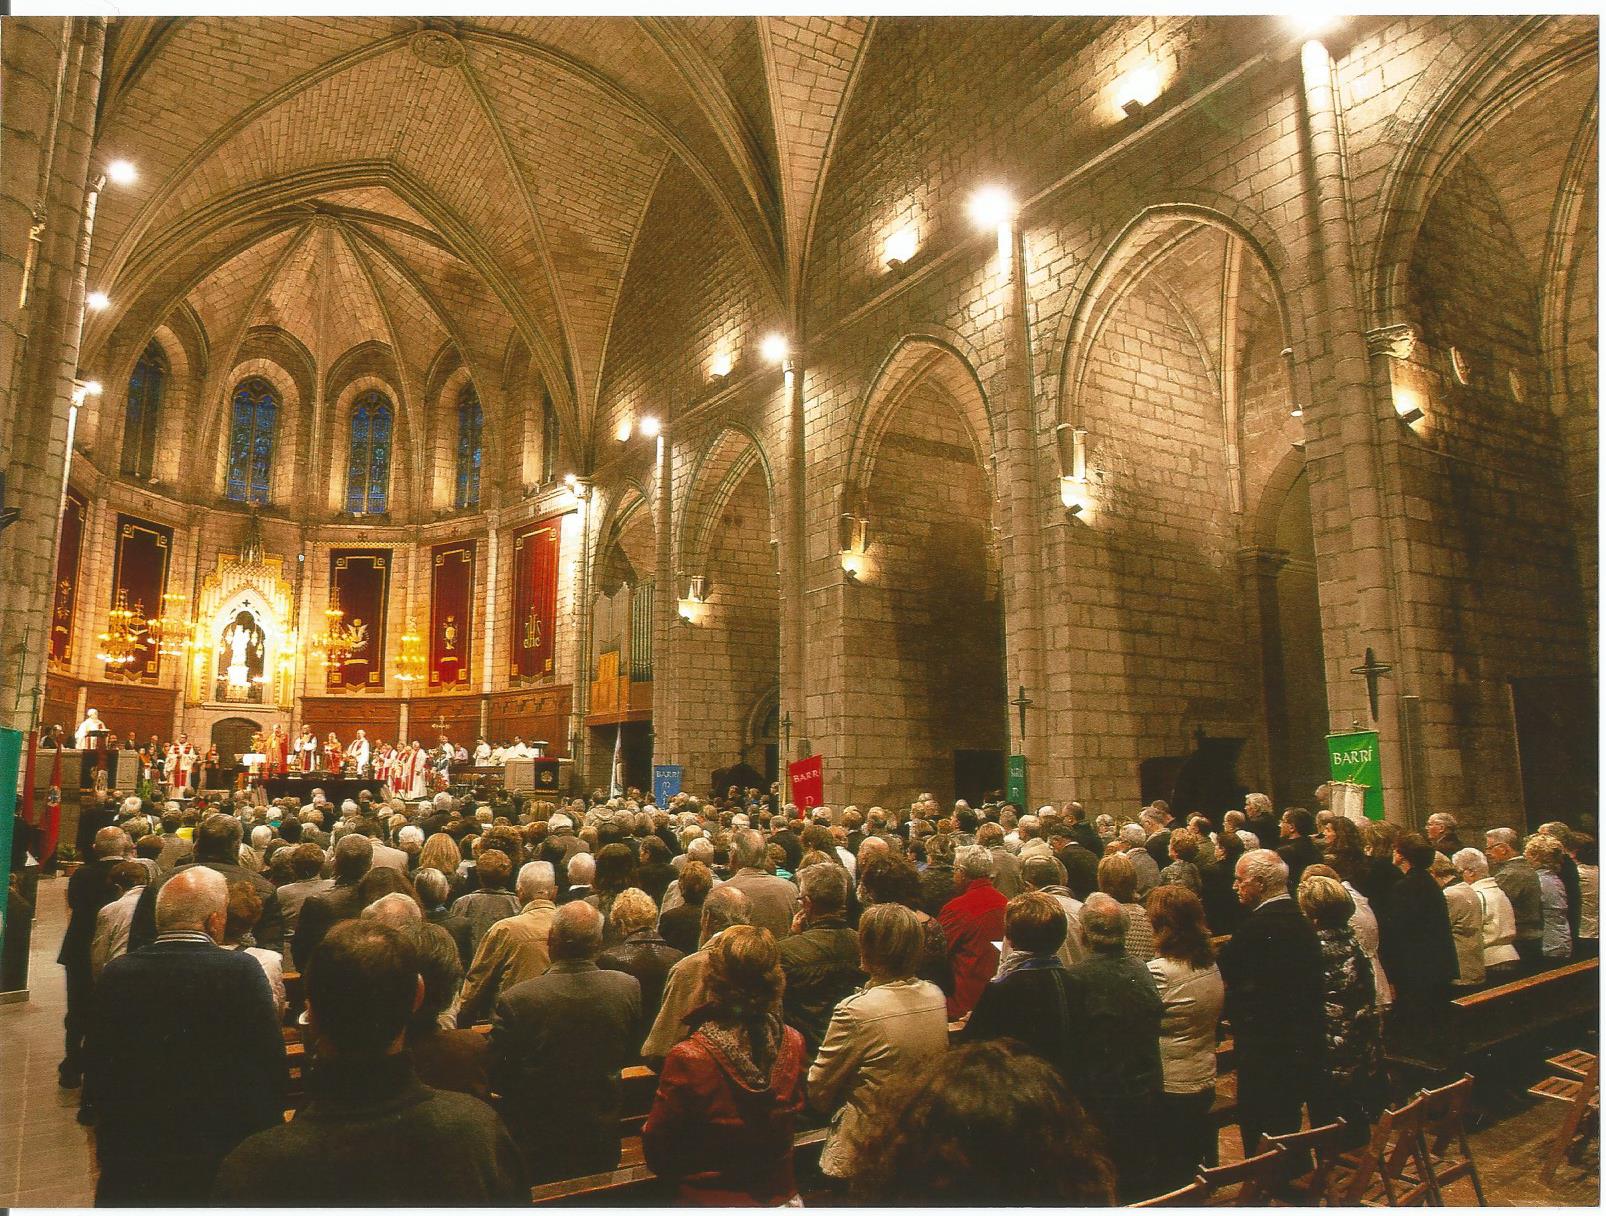 Cardona culmina aquest cap de setmana la celebració dels 625 anys de la consagració del temple parroquial